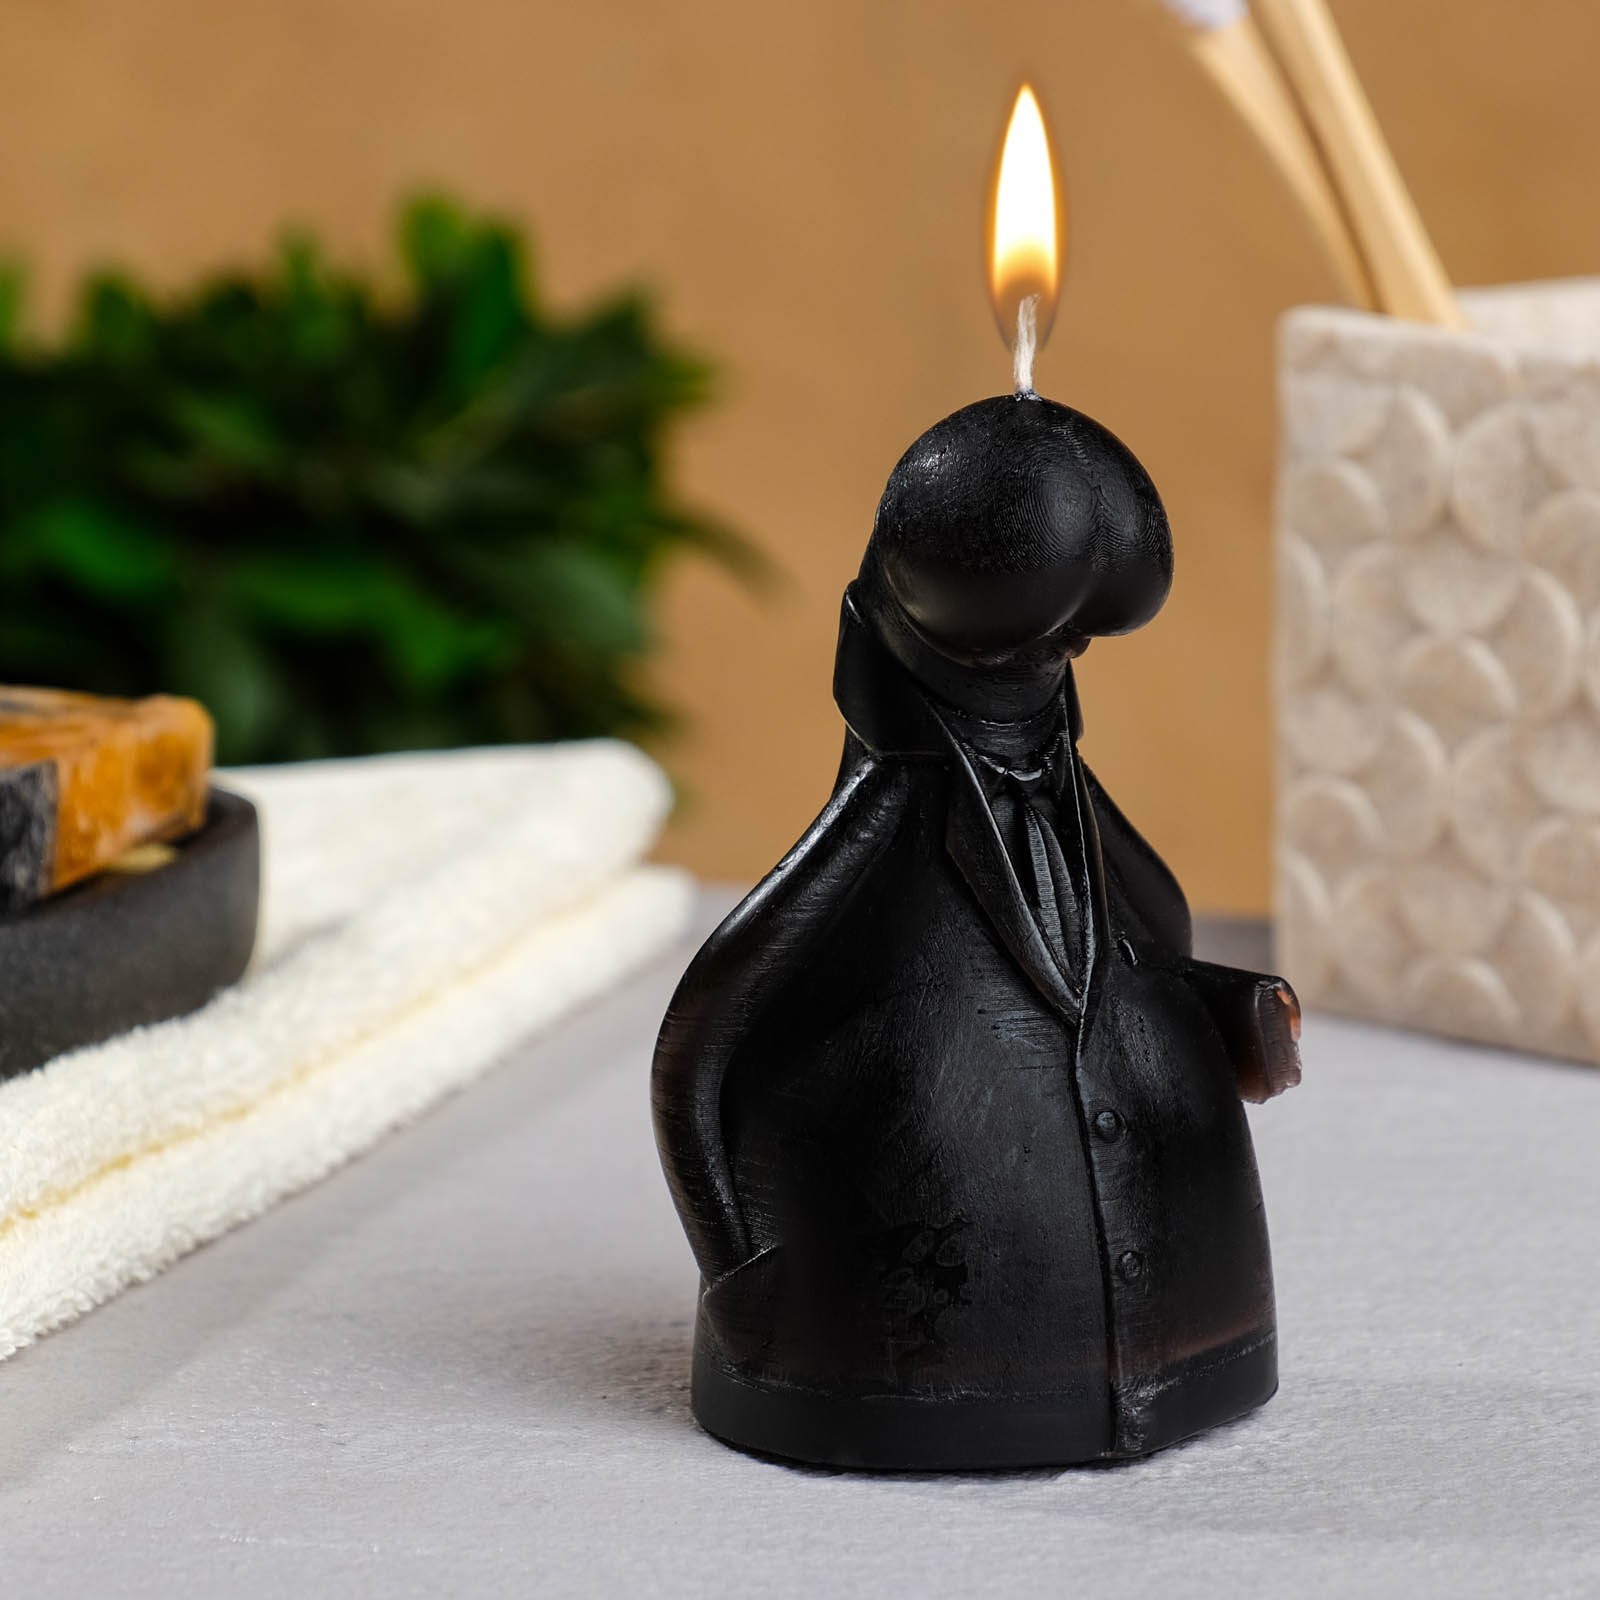 Фигурная свеча ГЛАВА, цвет - чёрный, 10см